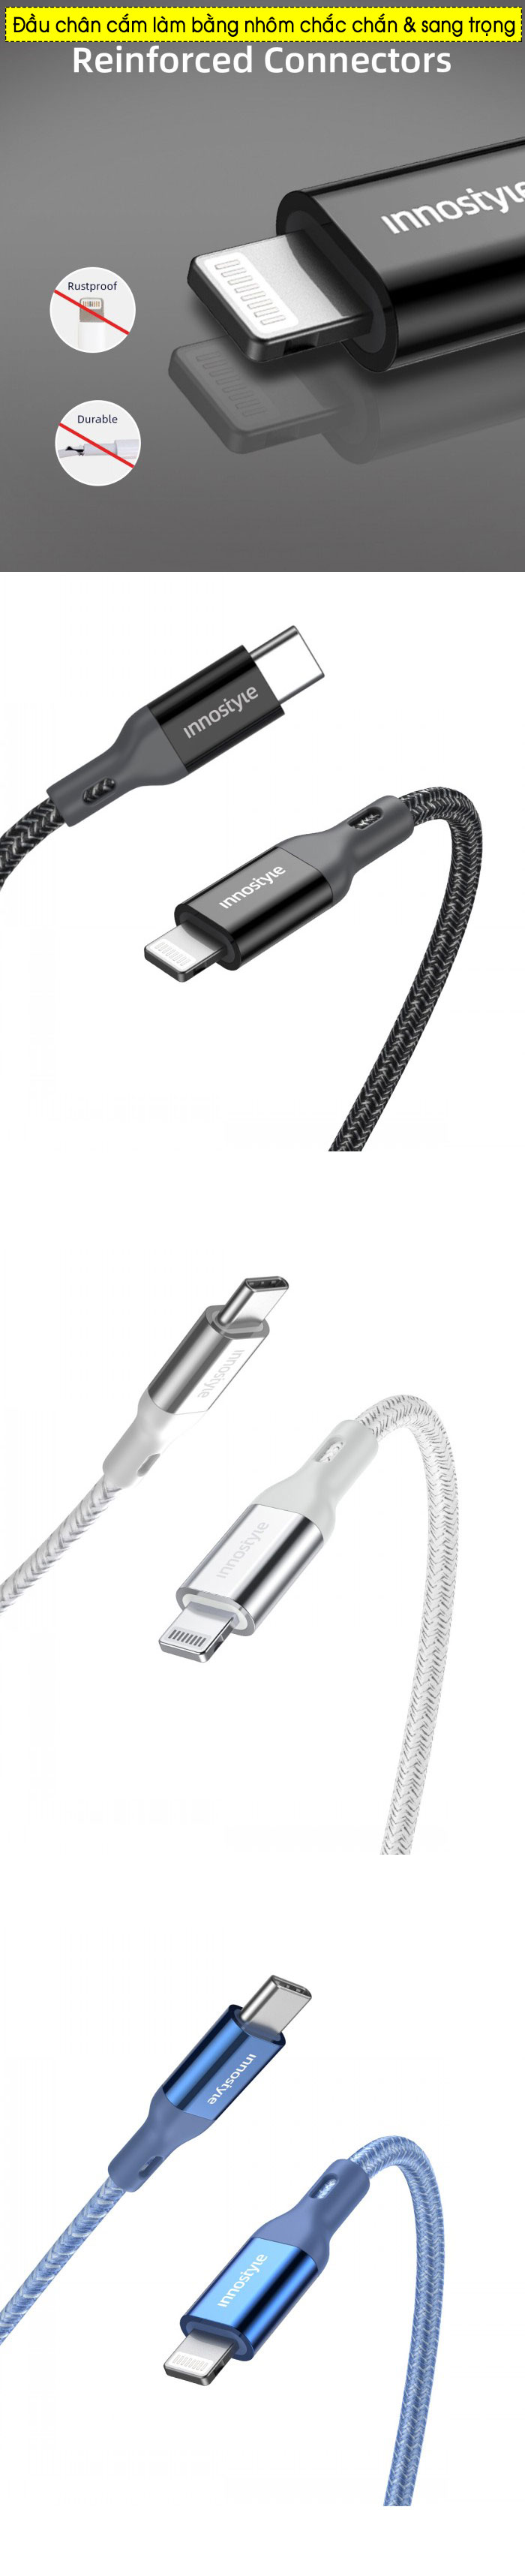 Cáp iPhone USB-C to Lighting INNOSTYLE Powerflex MFI 1.5m 60W 6